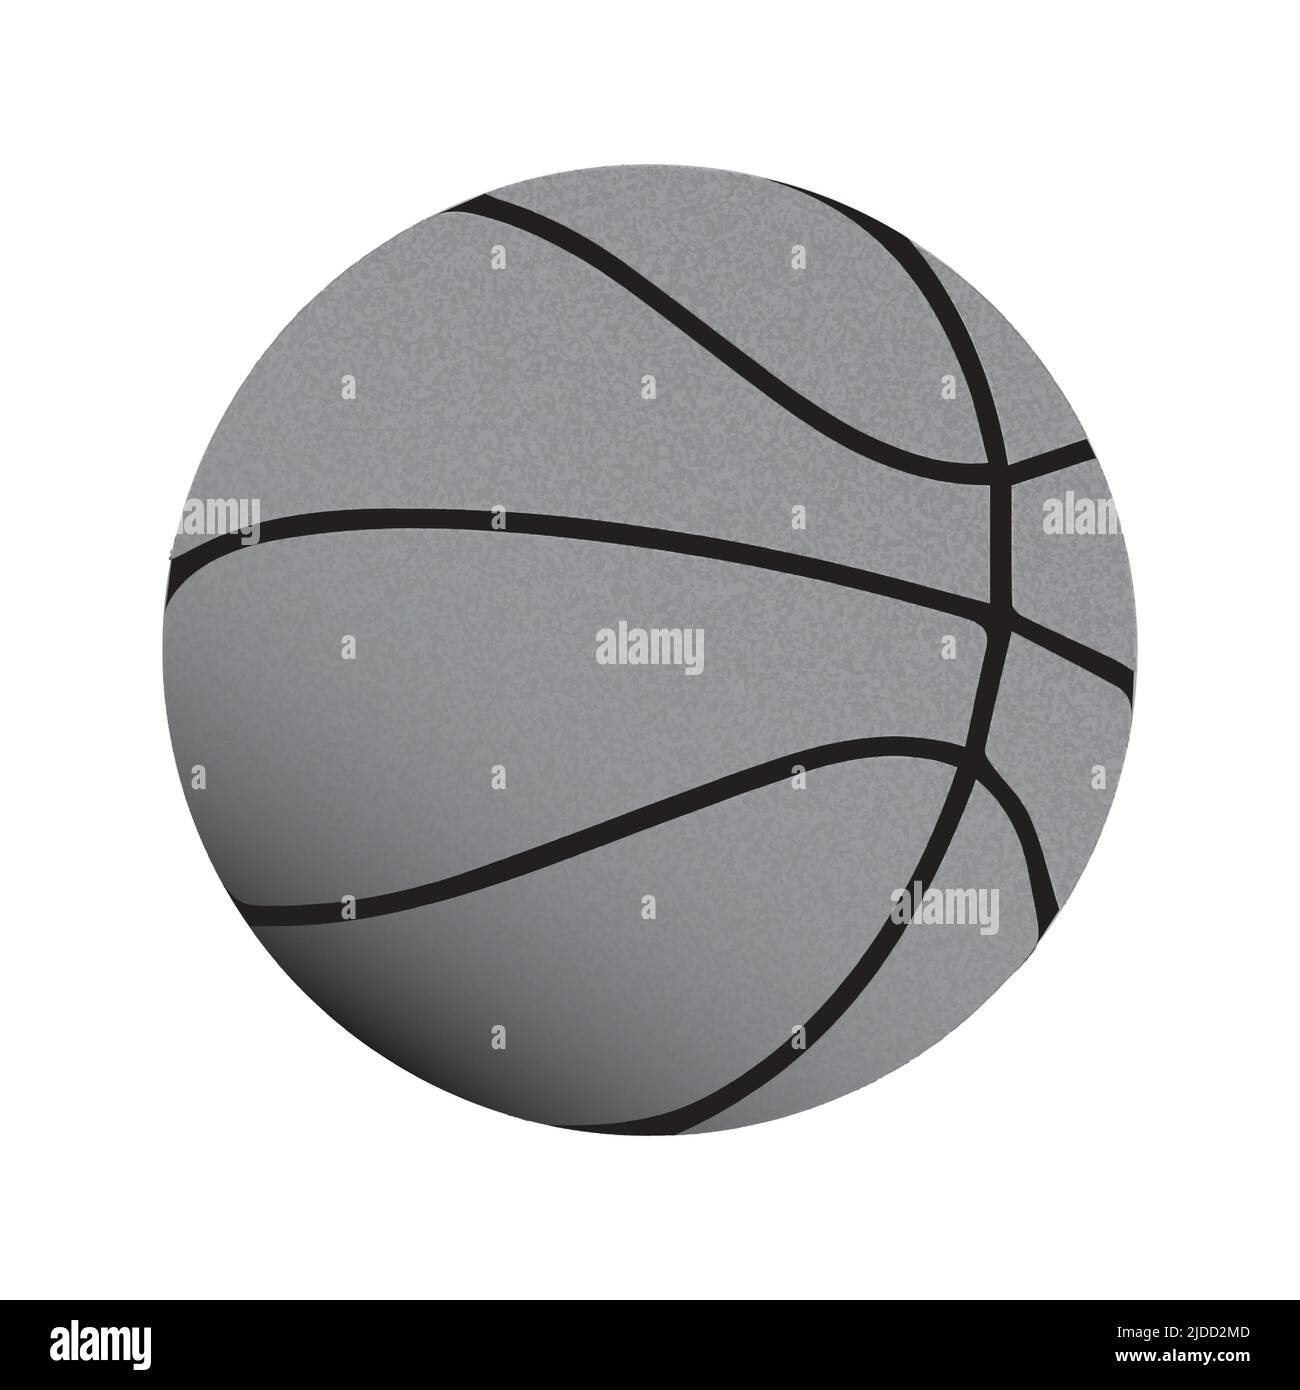 Ilustración vectorial del dibujo de una camarilla de baloncesto realista con collar gris. Ilustración vectorial Ilustración del Vector